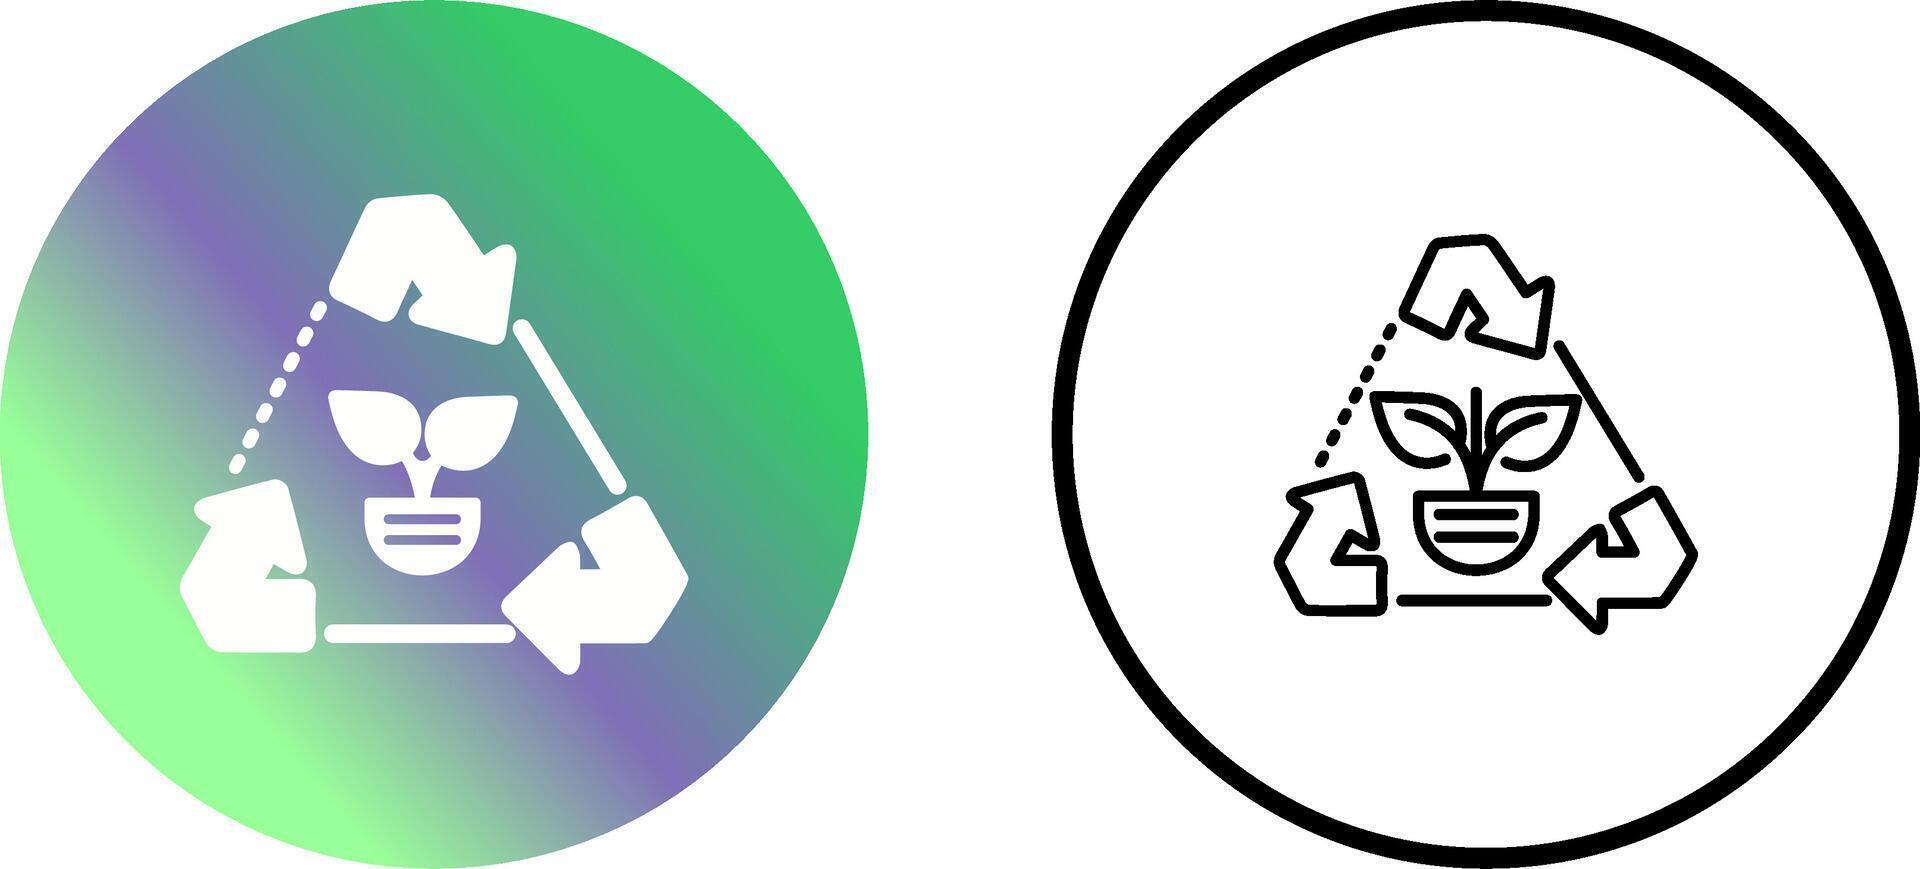 Recycle Arrows Vector Icon